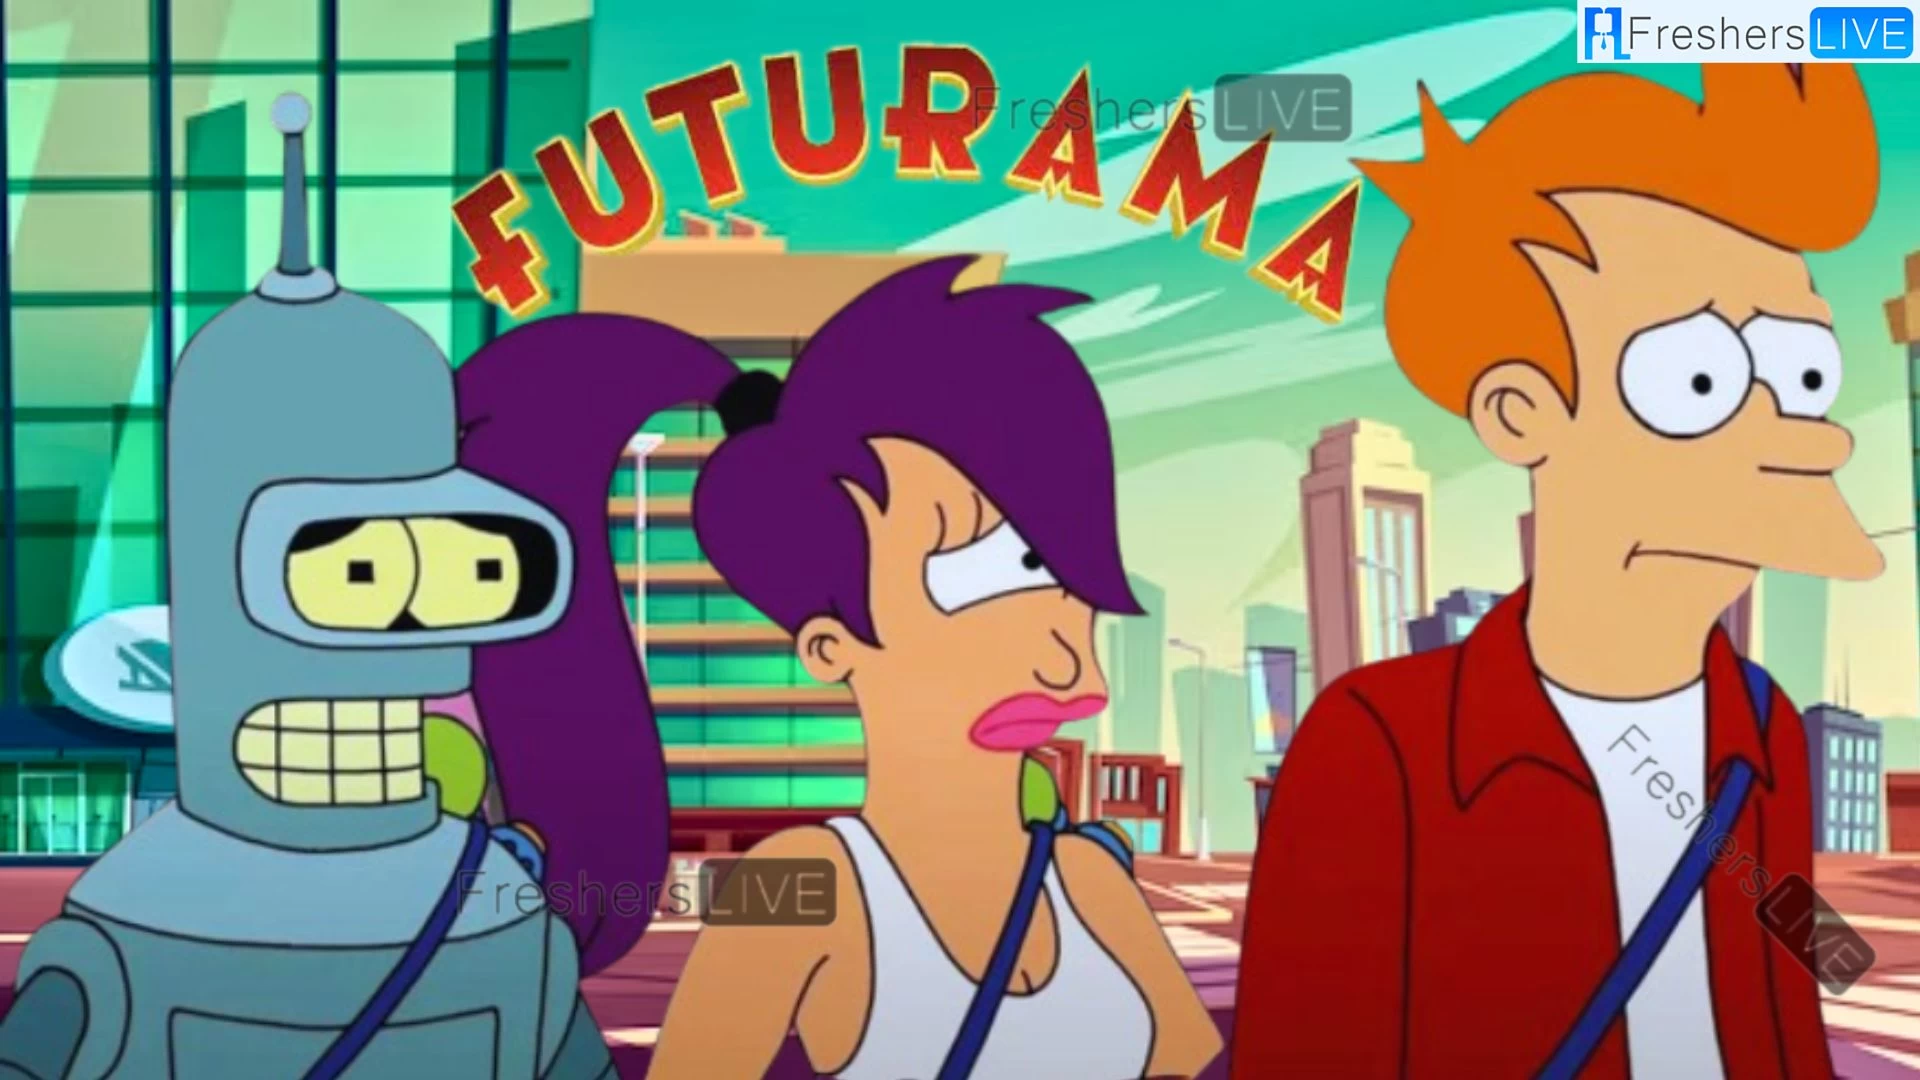 ¿Habrá una temporada 12 de Futurama?  Fecha de lanzamiento de la temporada 12 de Futurama